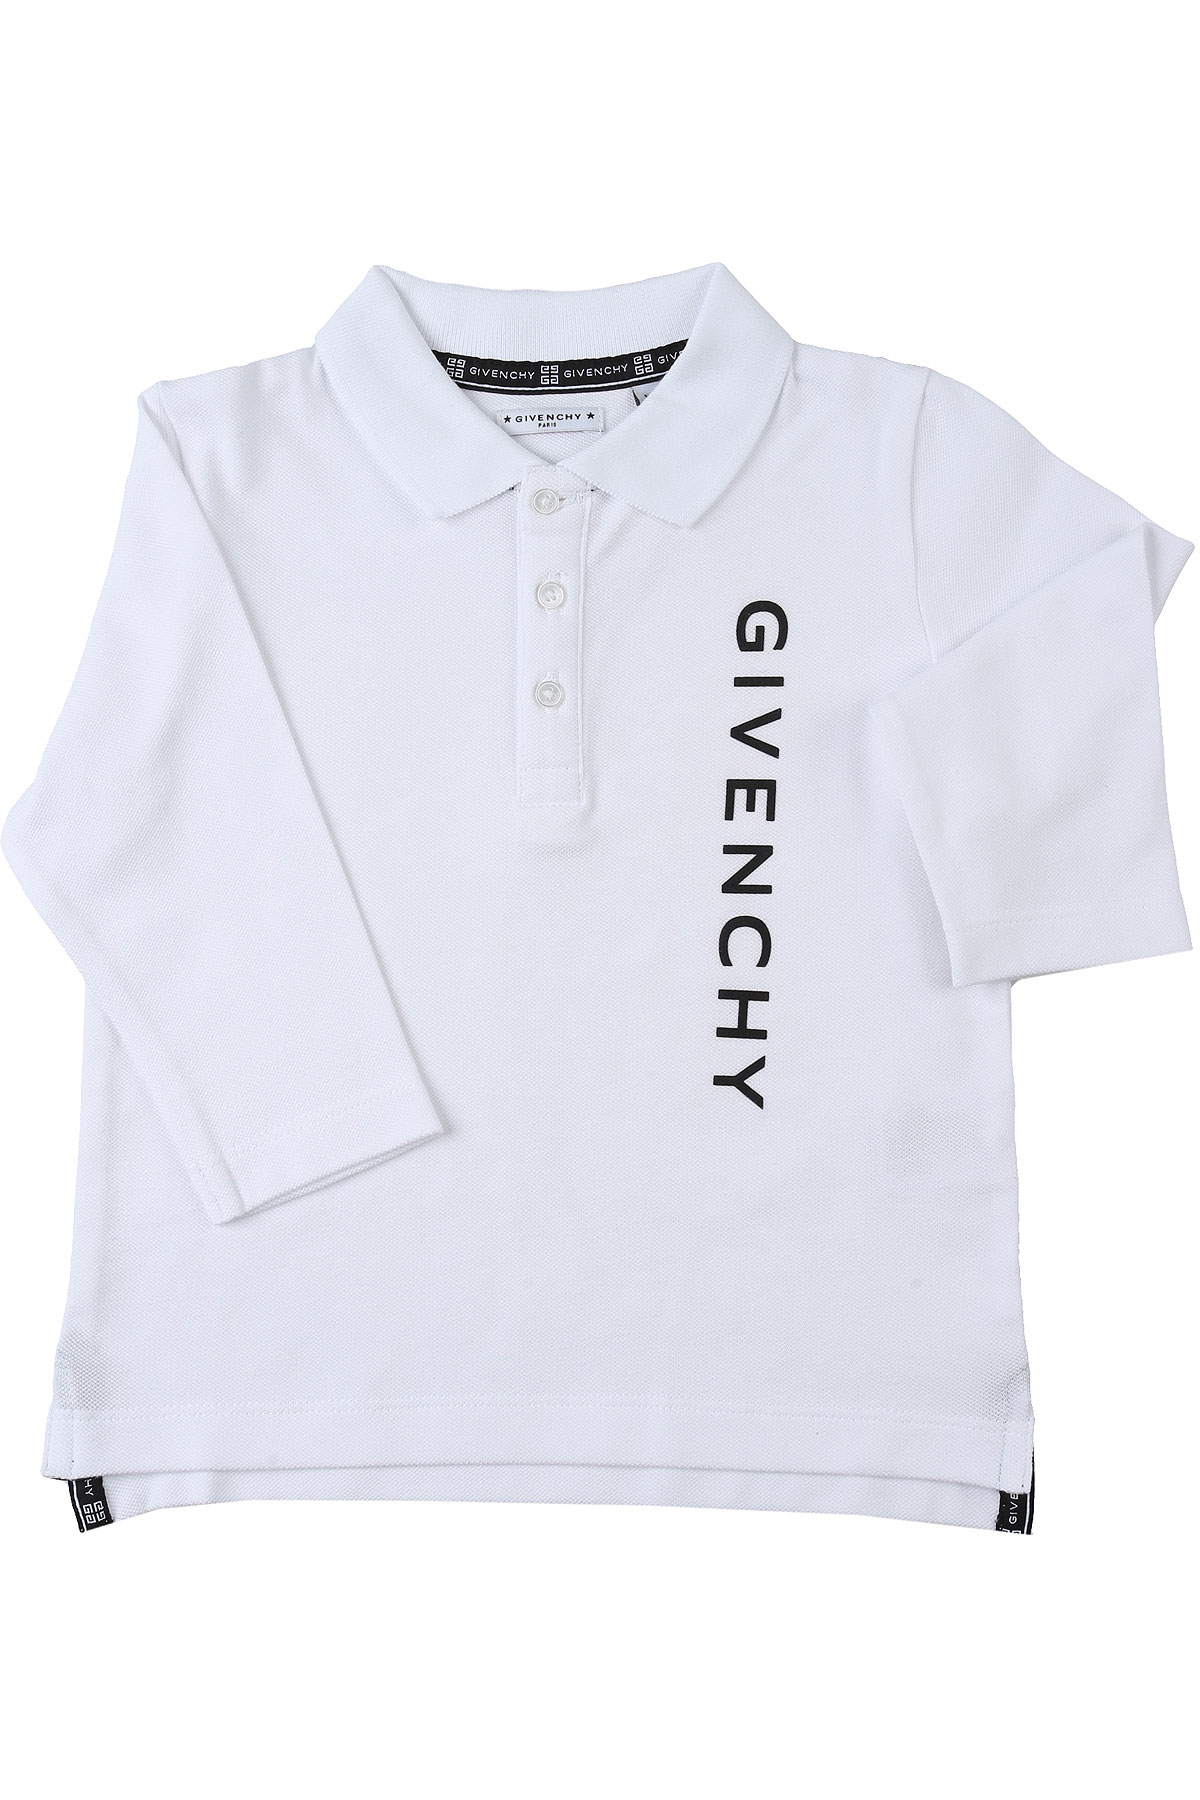 Givenchy Baby Polohemd für Jungen Günstig im Sale, Weiss, Baumwolle, 2017, 12 M 18M 2Y 3Y 9M